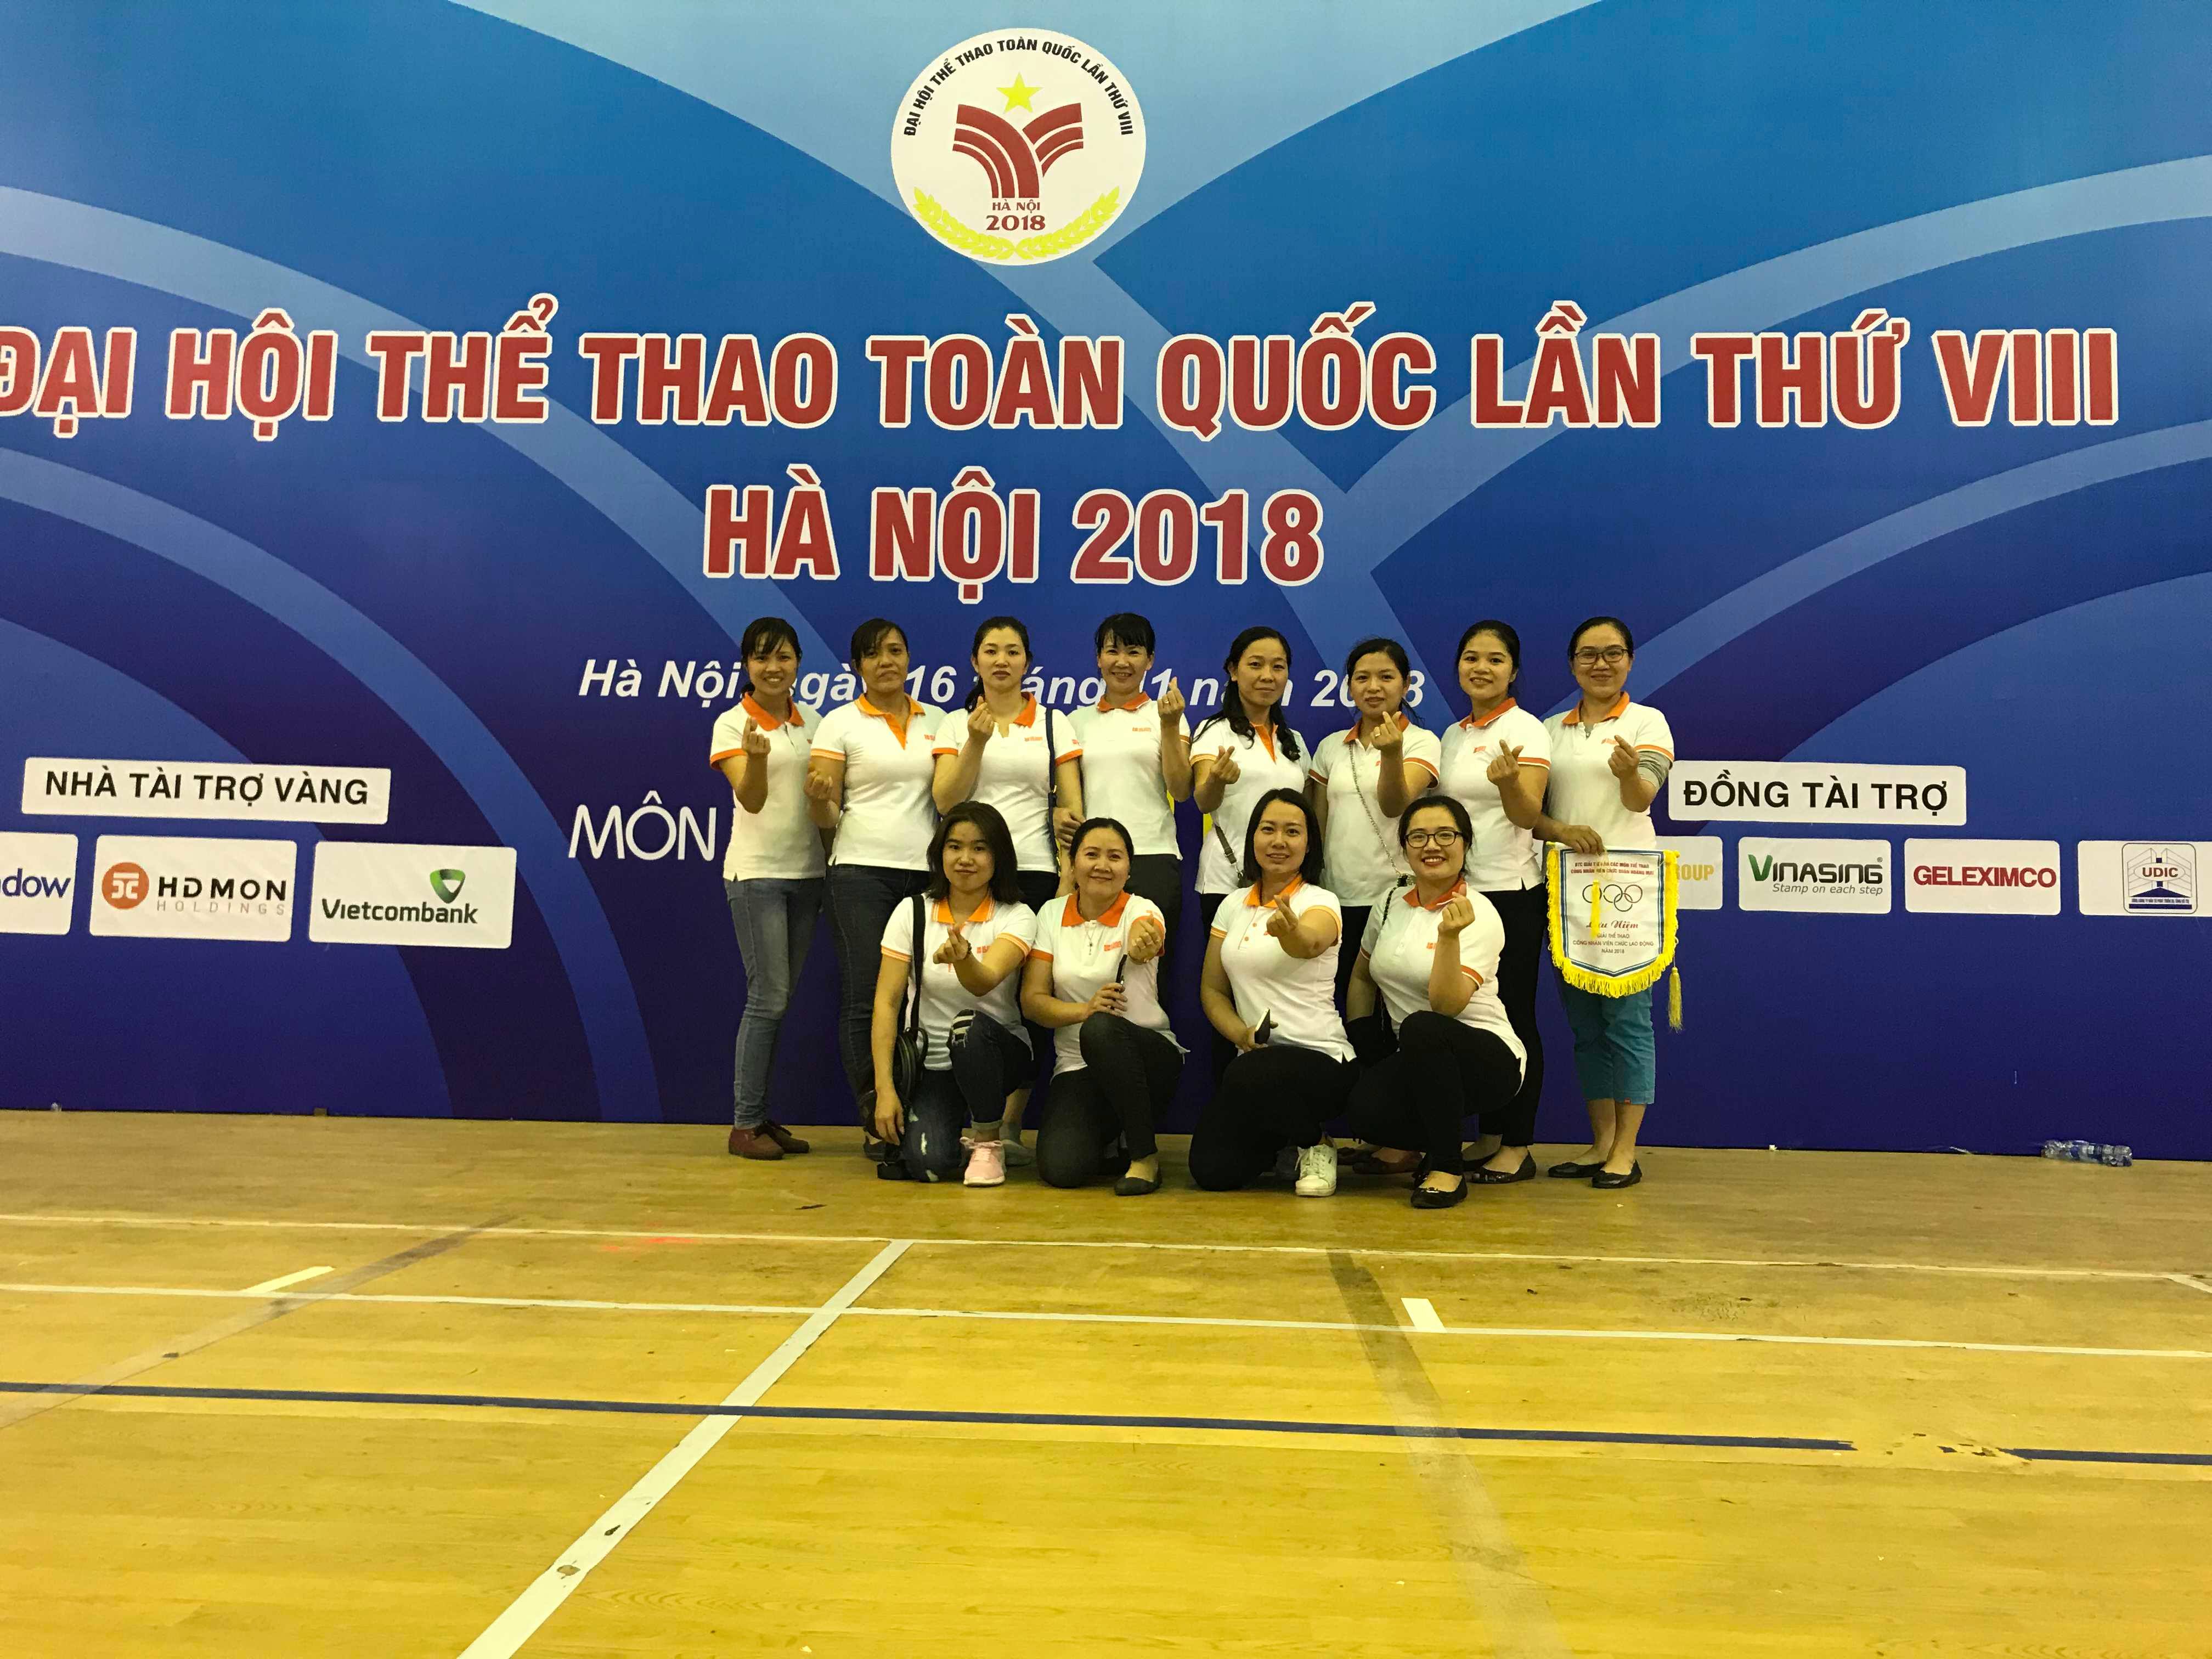 Cán bộ giáo viên trường Tiểu học Quốc tế Thăng Long tham gia giải thể thao công nhân viên chức 2018